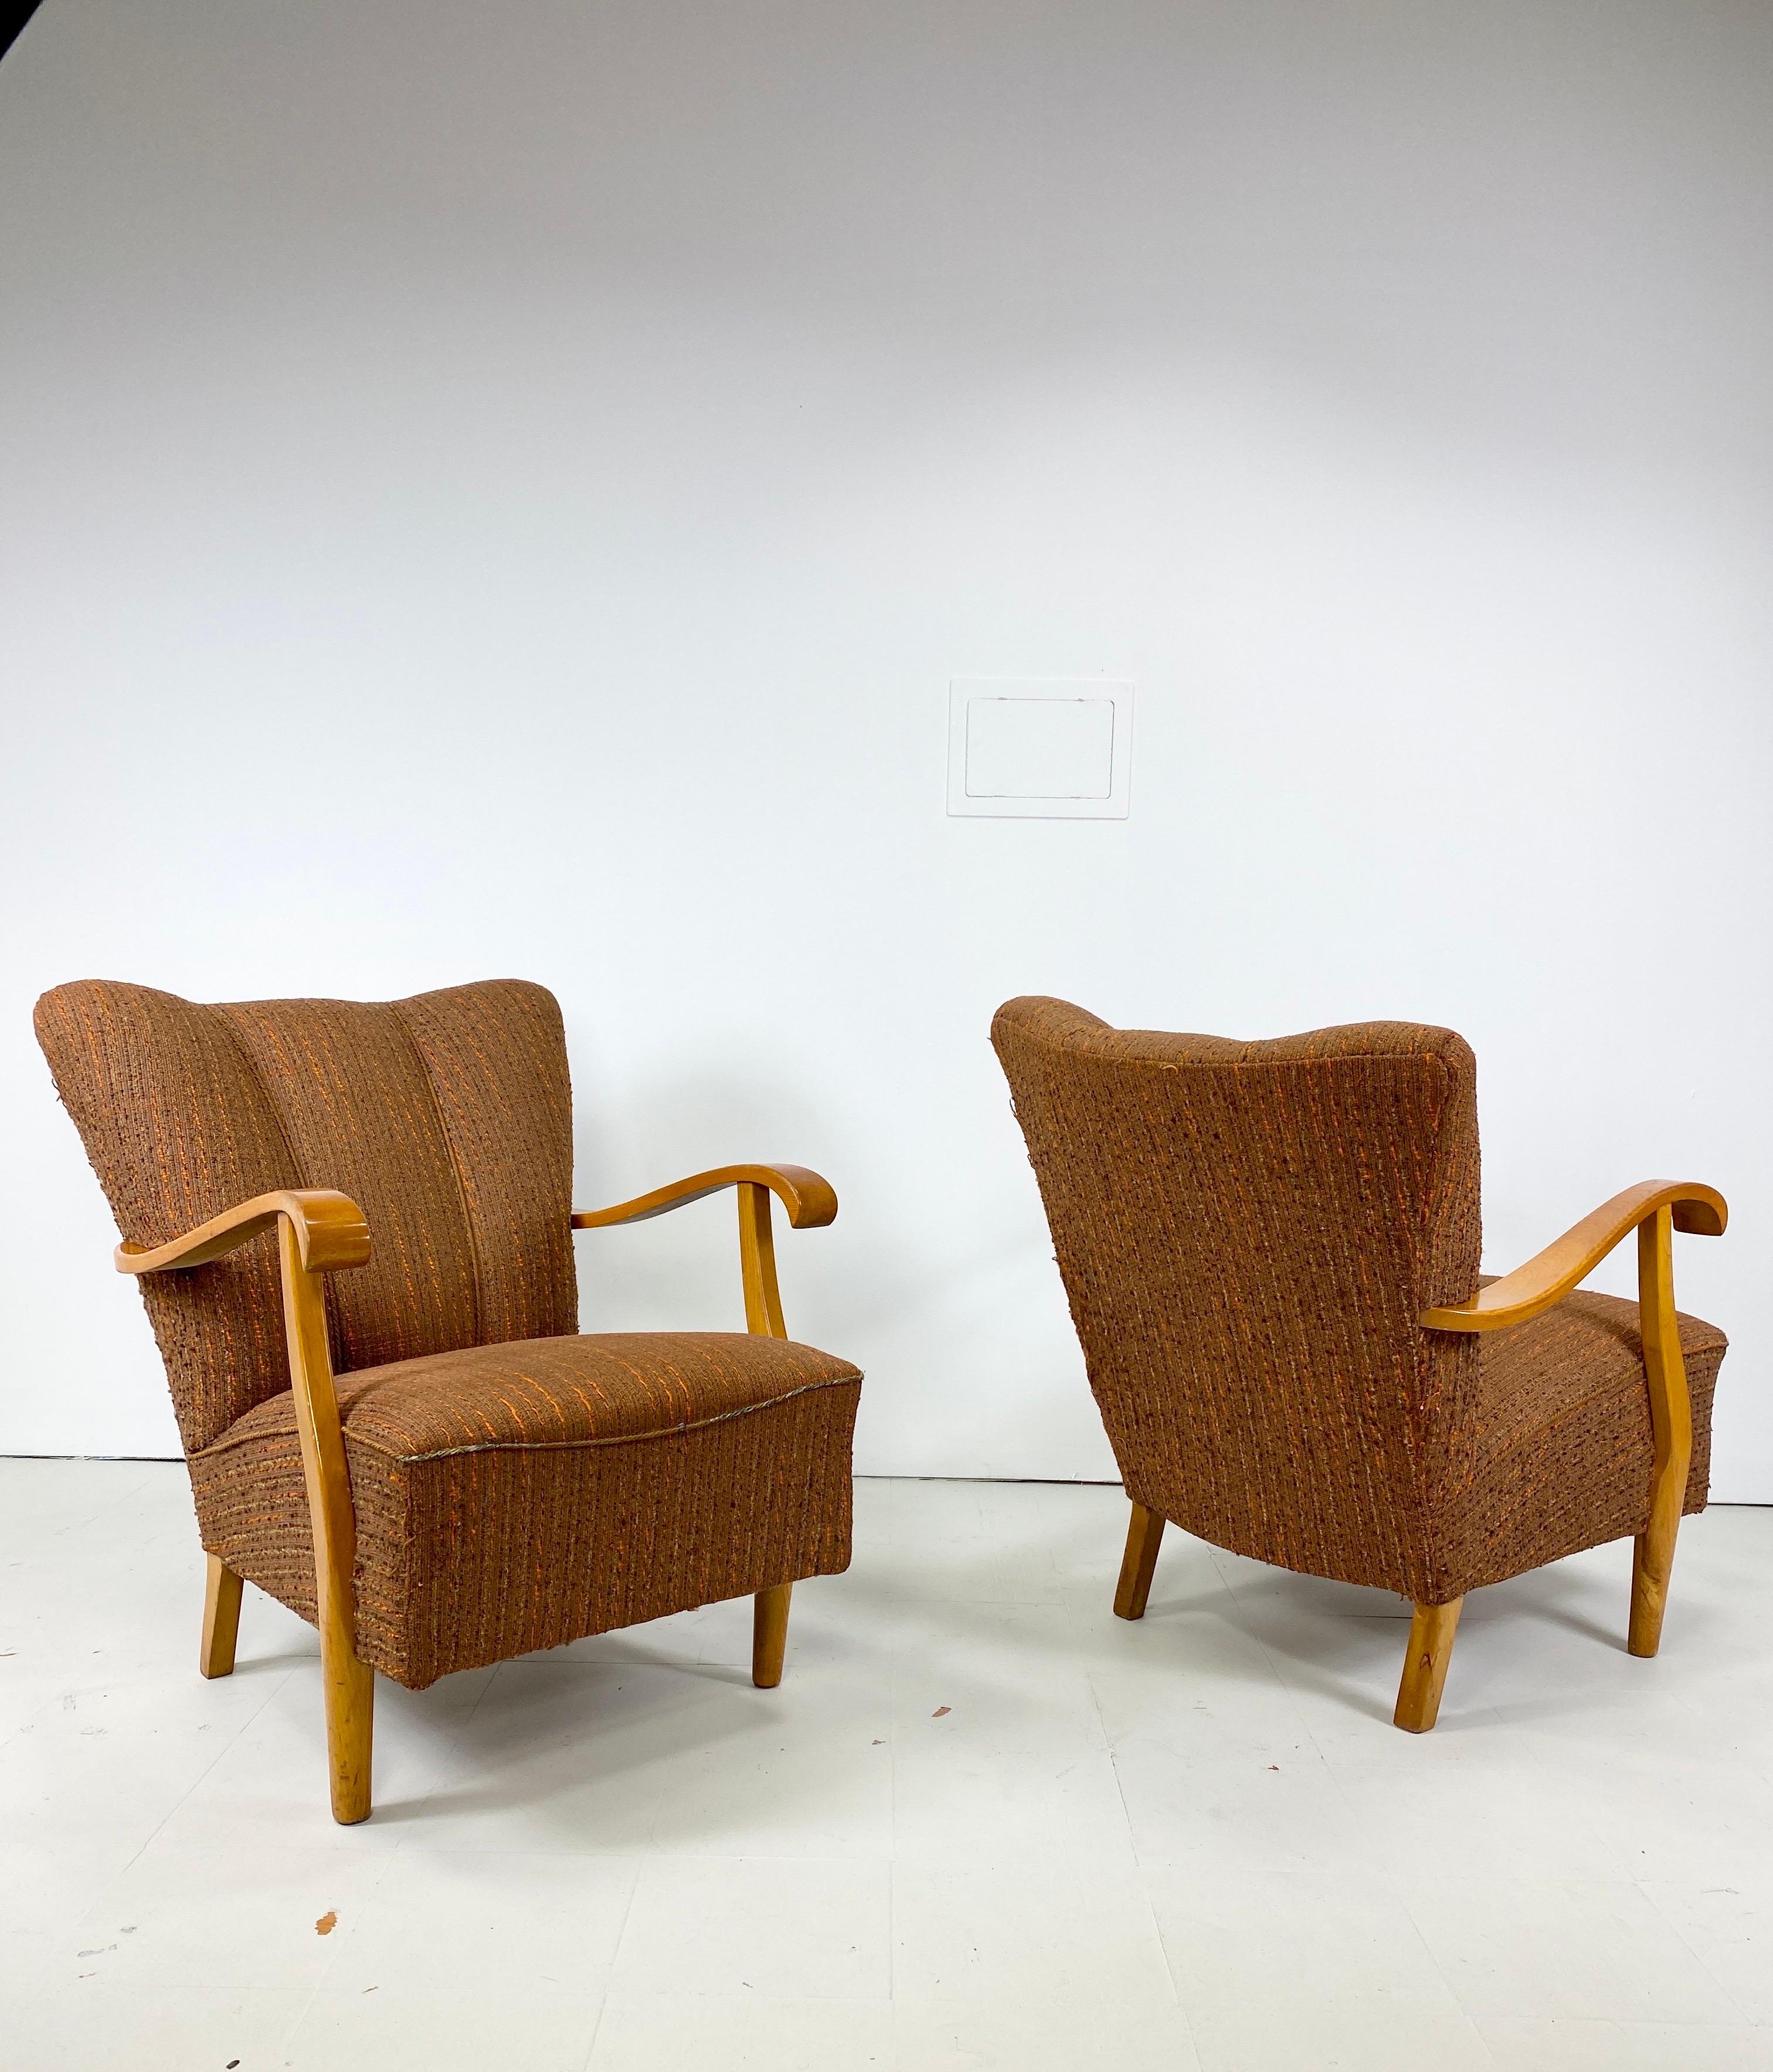 Paire de chaises longues suédoises des années 1940. Cadres élégants en bois de Beeche. Vintage Upholstery. Patine chaude. 

Nous proposons la livraison à New York pour 425